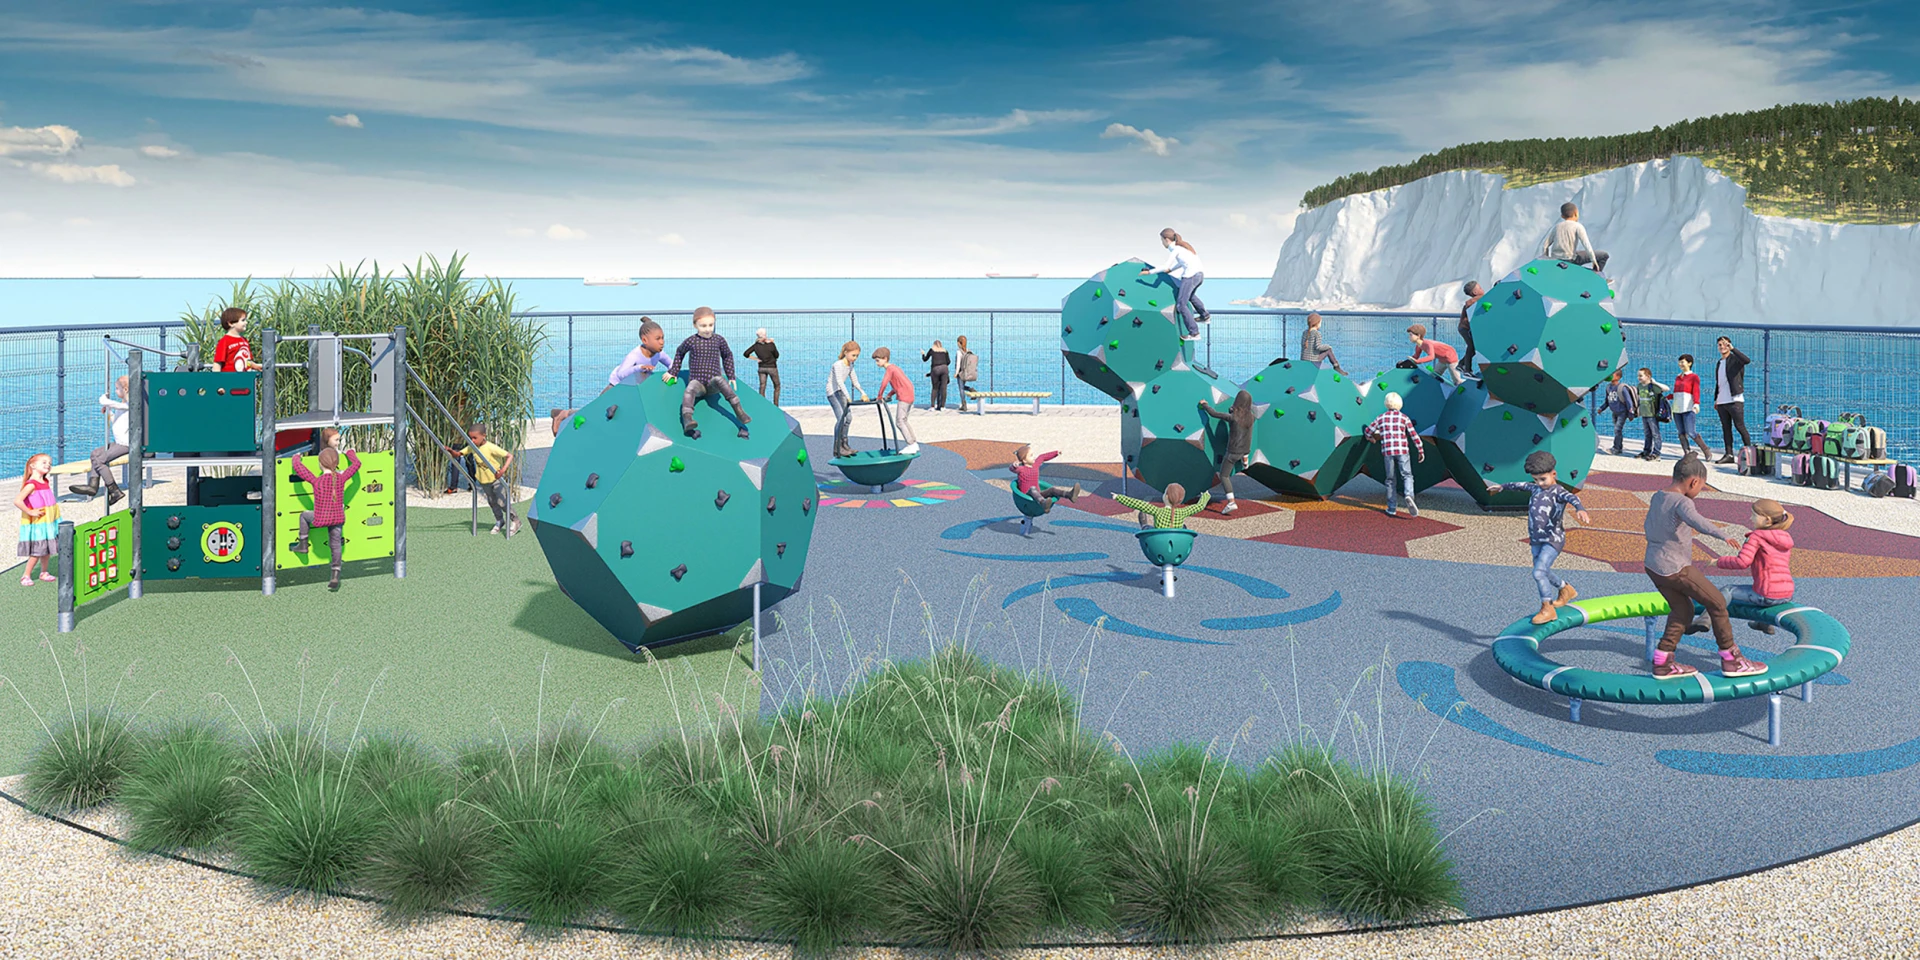 idea de diseño para un parque infantil escolar con bajas emisiones de carbono